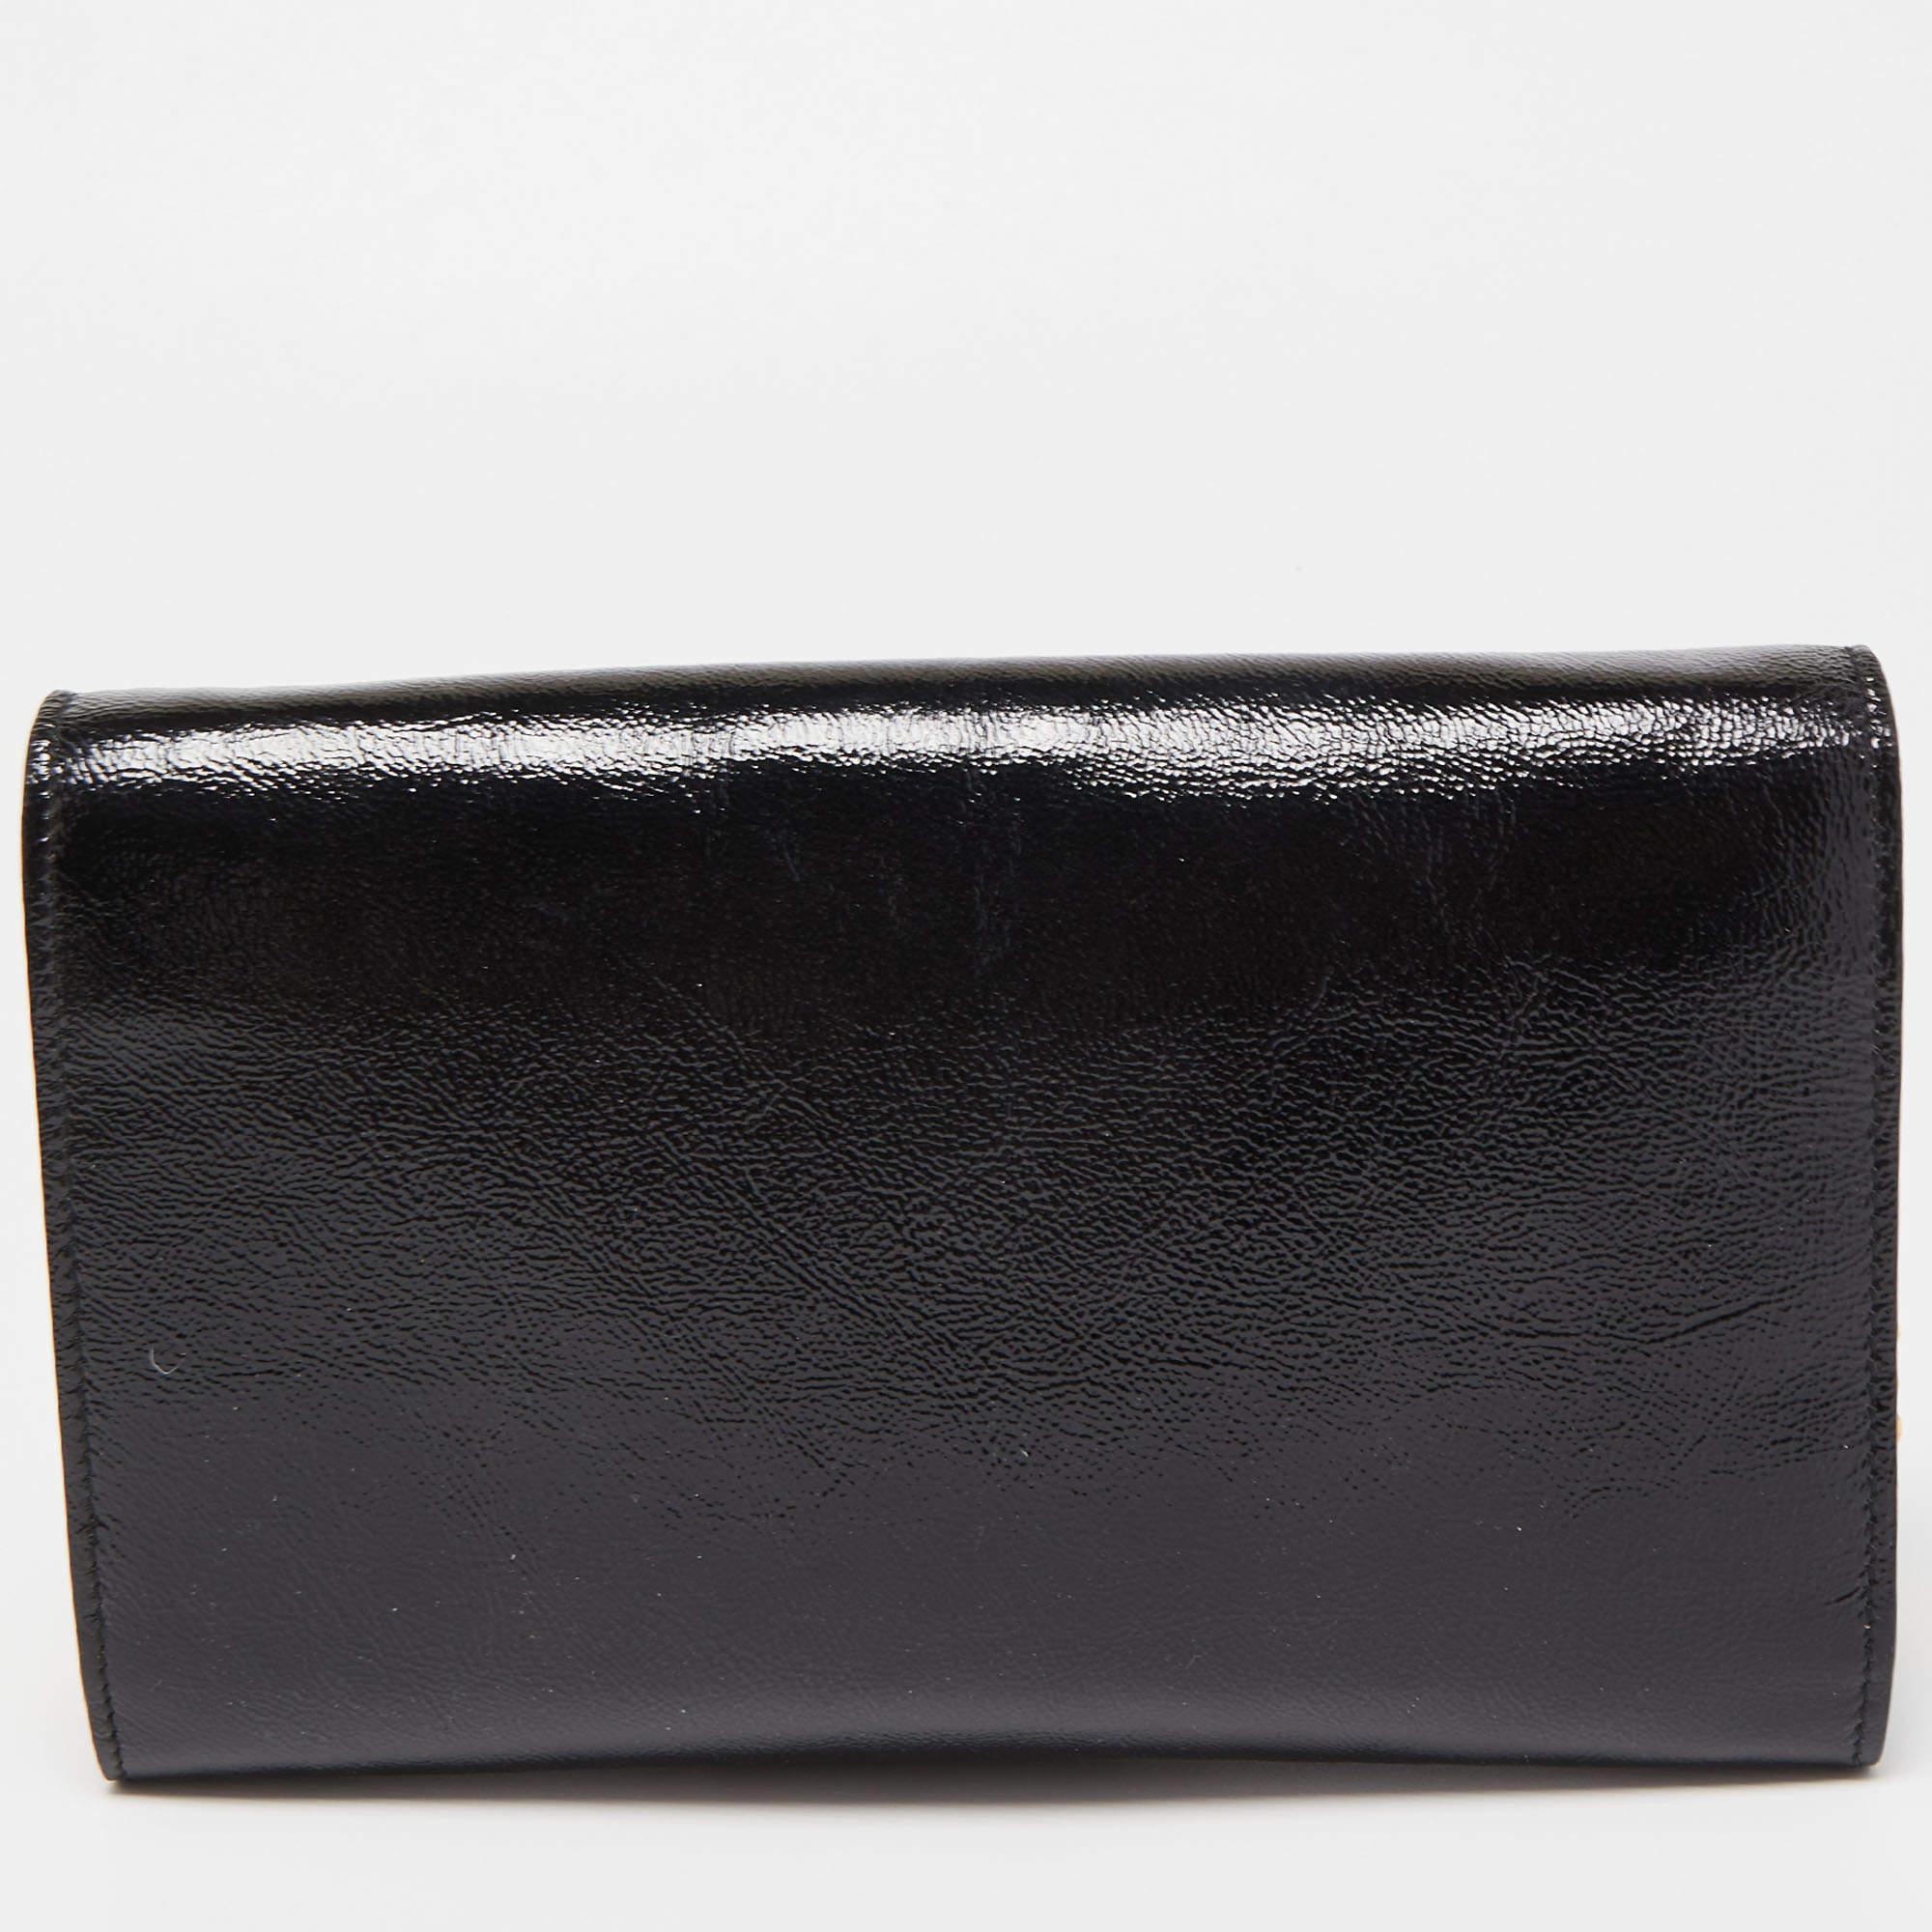 Yves Saint Laurent Black Patent Leather Belle De Jour Wallet on Chain 4